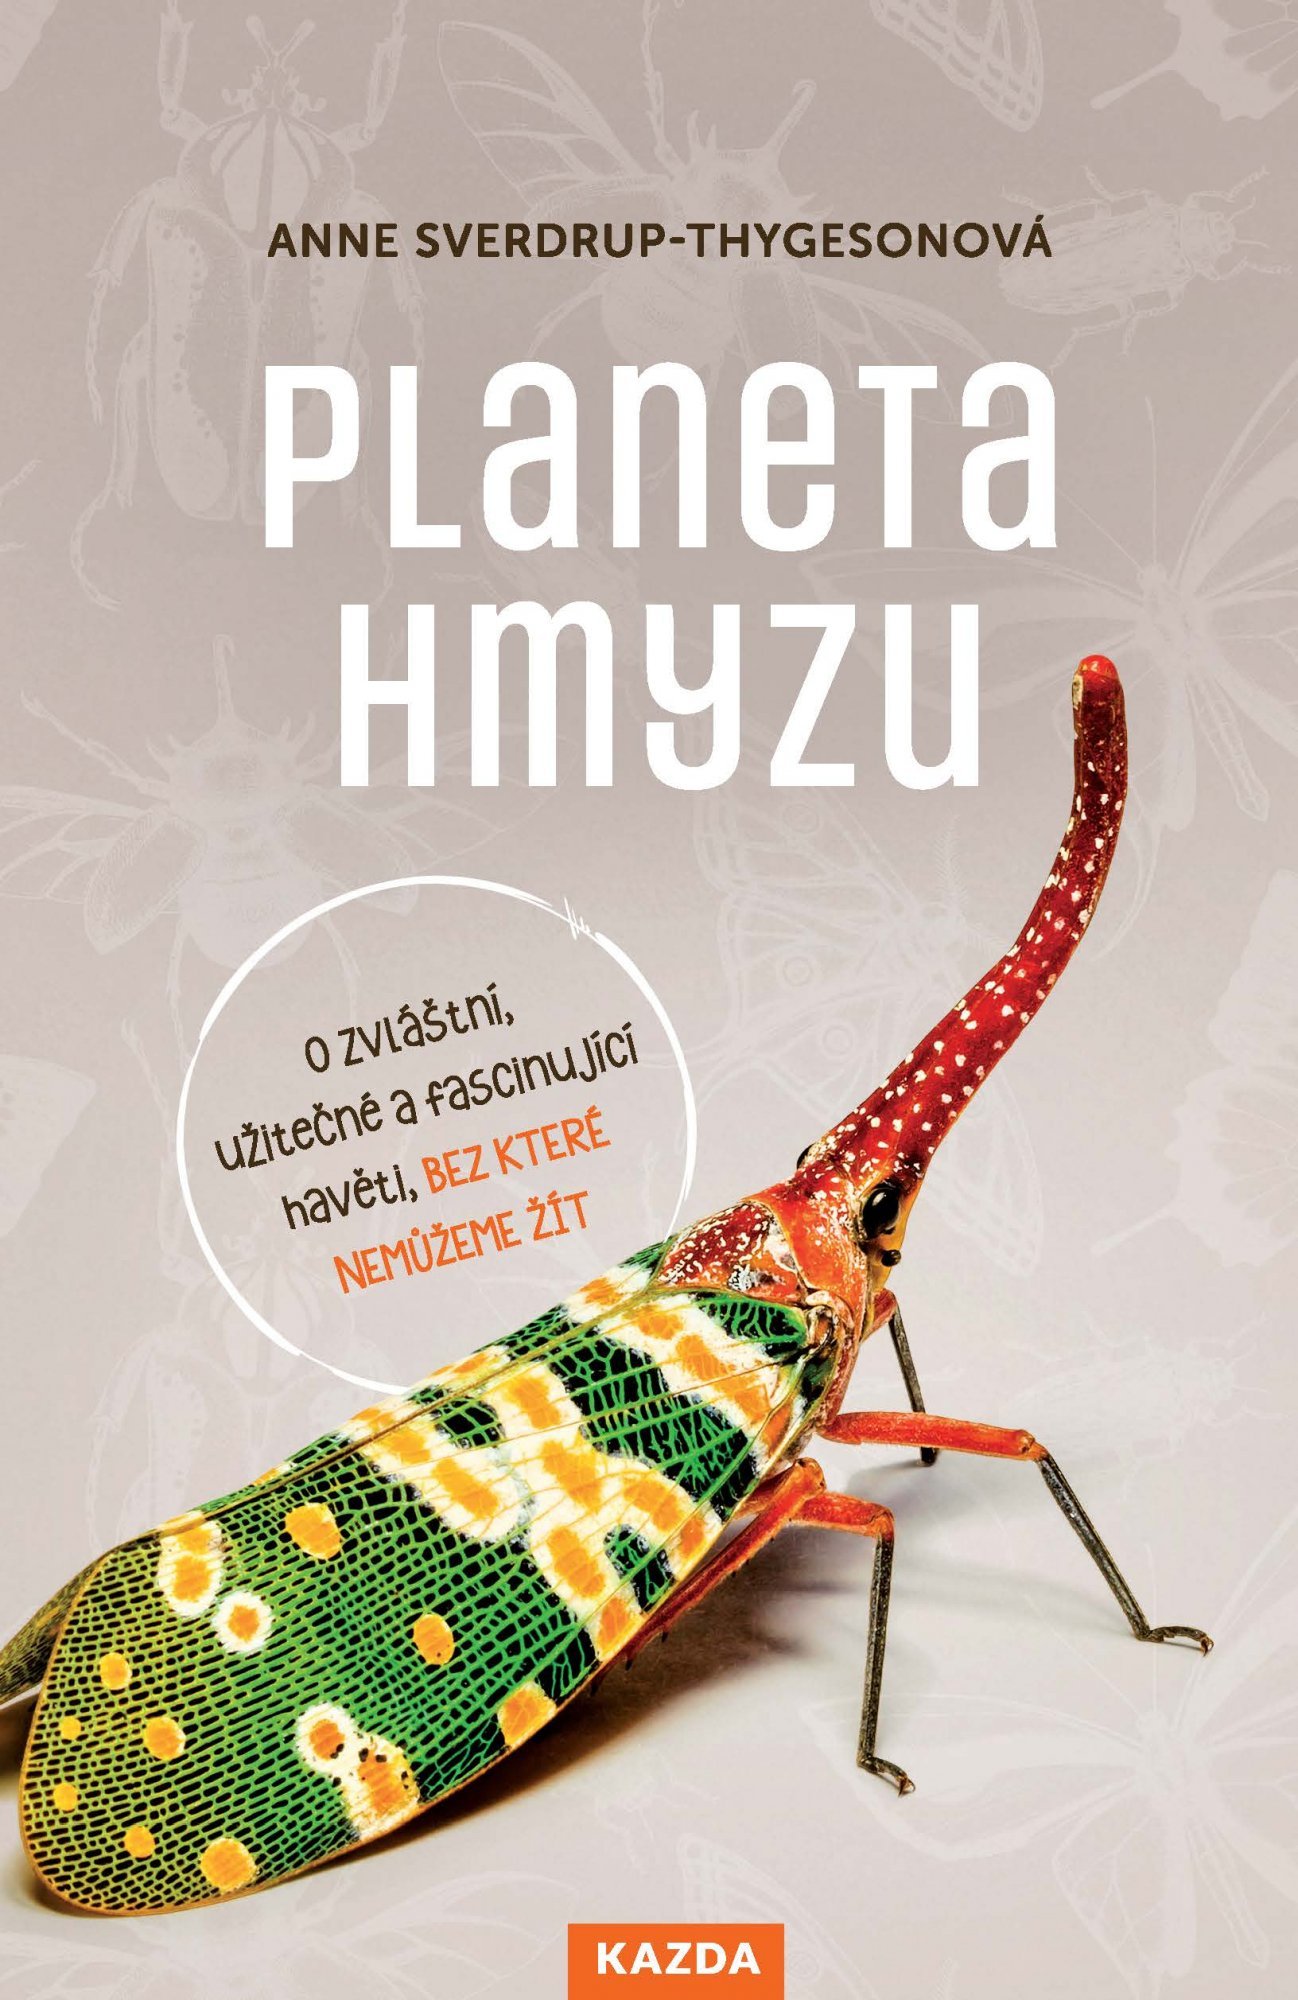 Planeta hmyzu - O zvláštní, užitečné a fascinující havěti, bez které nemůžeme žít - Anne Sverdrup-Thygesonová